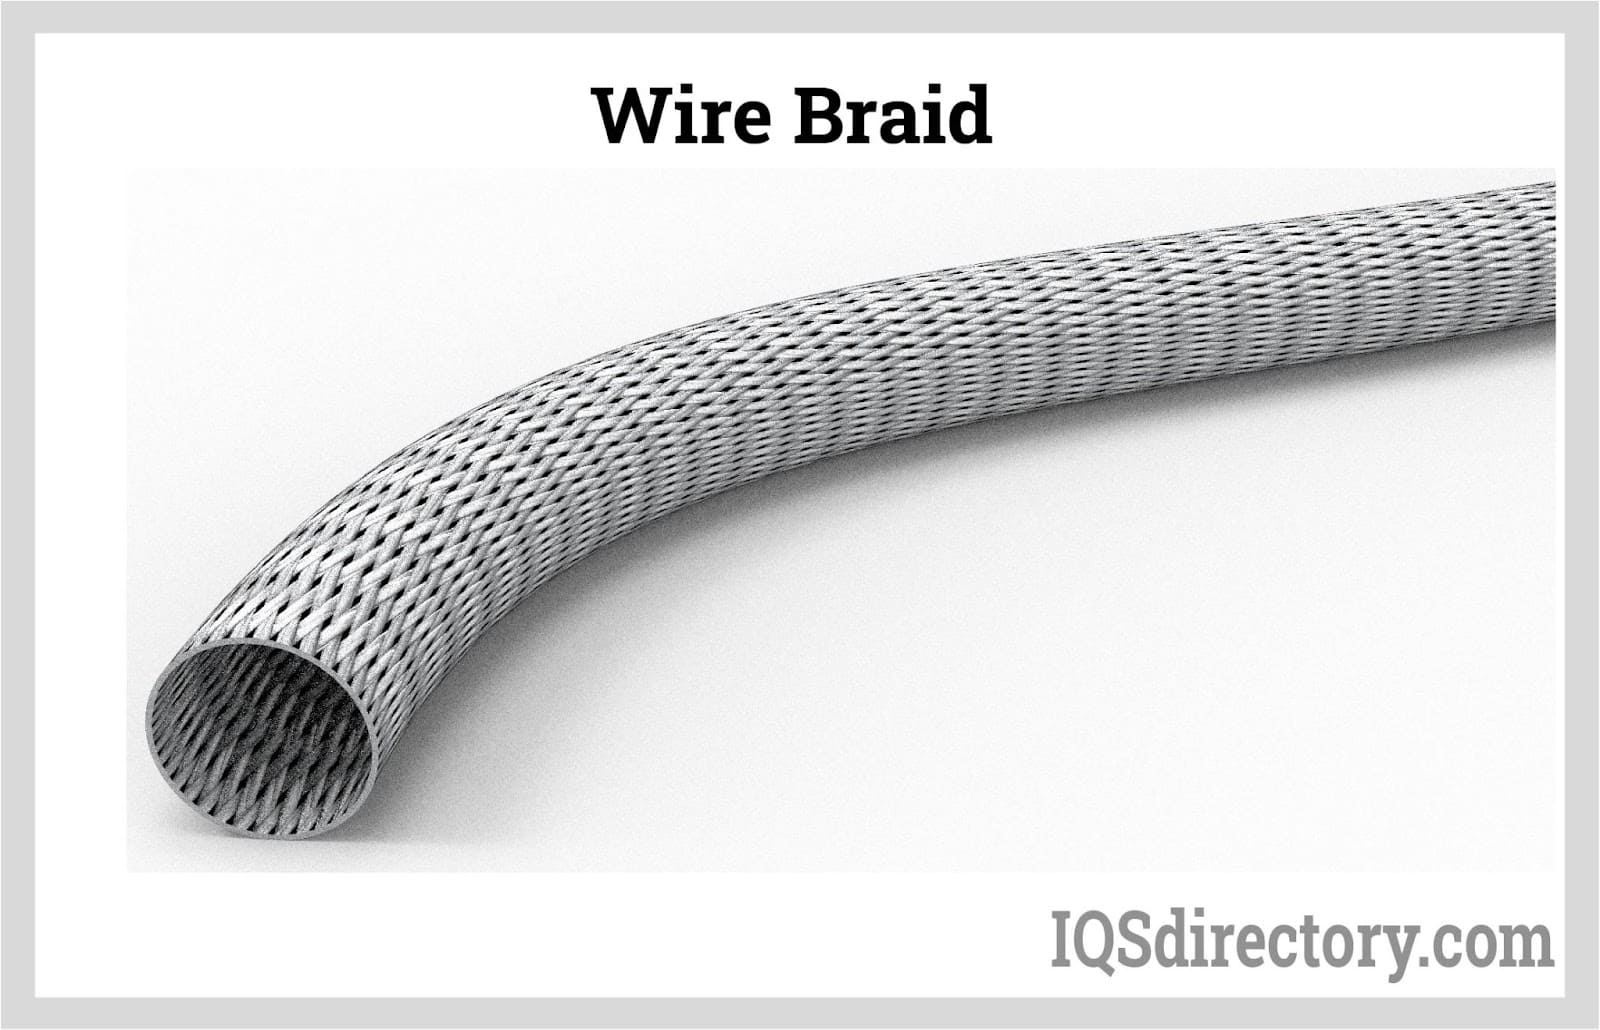 Wire Braid